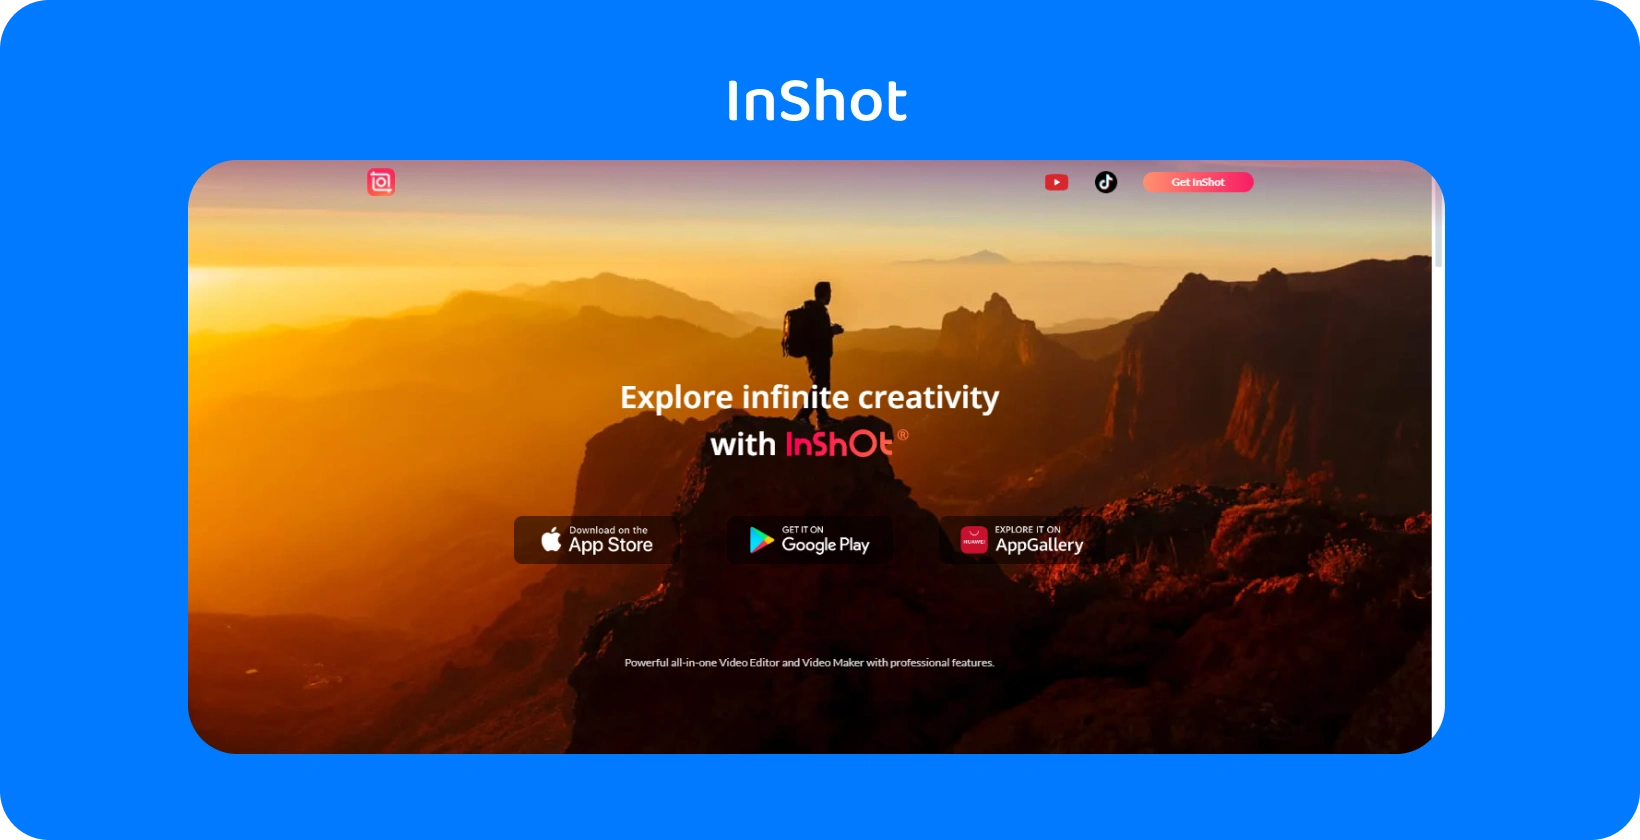 InShot alkalmazás hirdetése, amely naplementekor túrázót ábrázol, szimbolizálva az alkalmazás ígéretét, hogy végtelen kreativitást fedez fel a videószerkesztésben.
